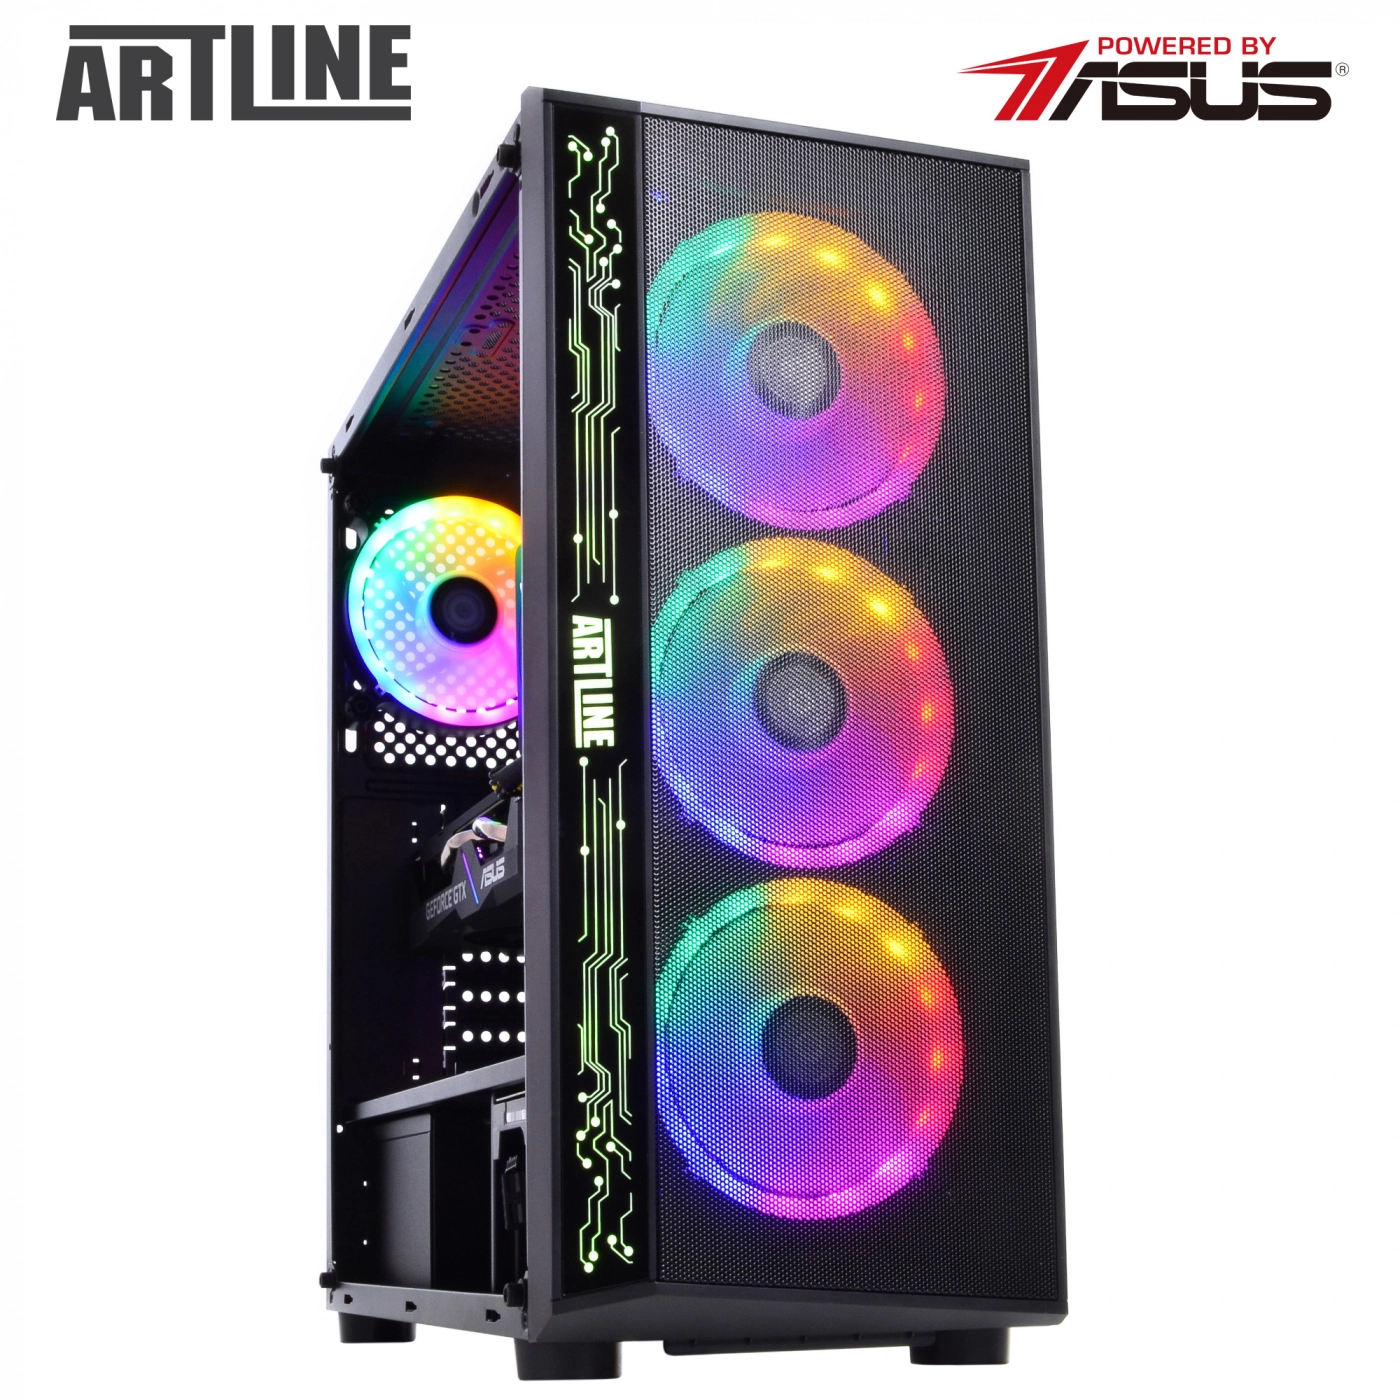 Купить Компьютер ARTLINE Gaming X35v33 - фото 2